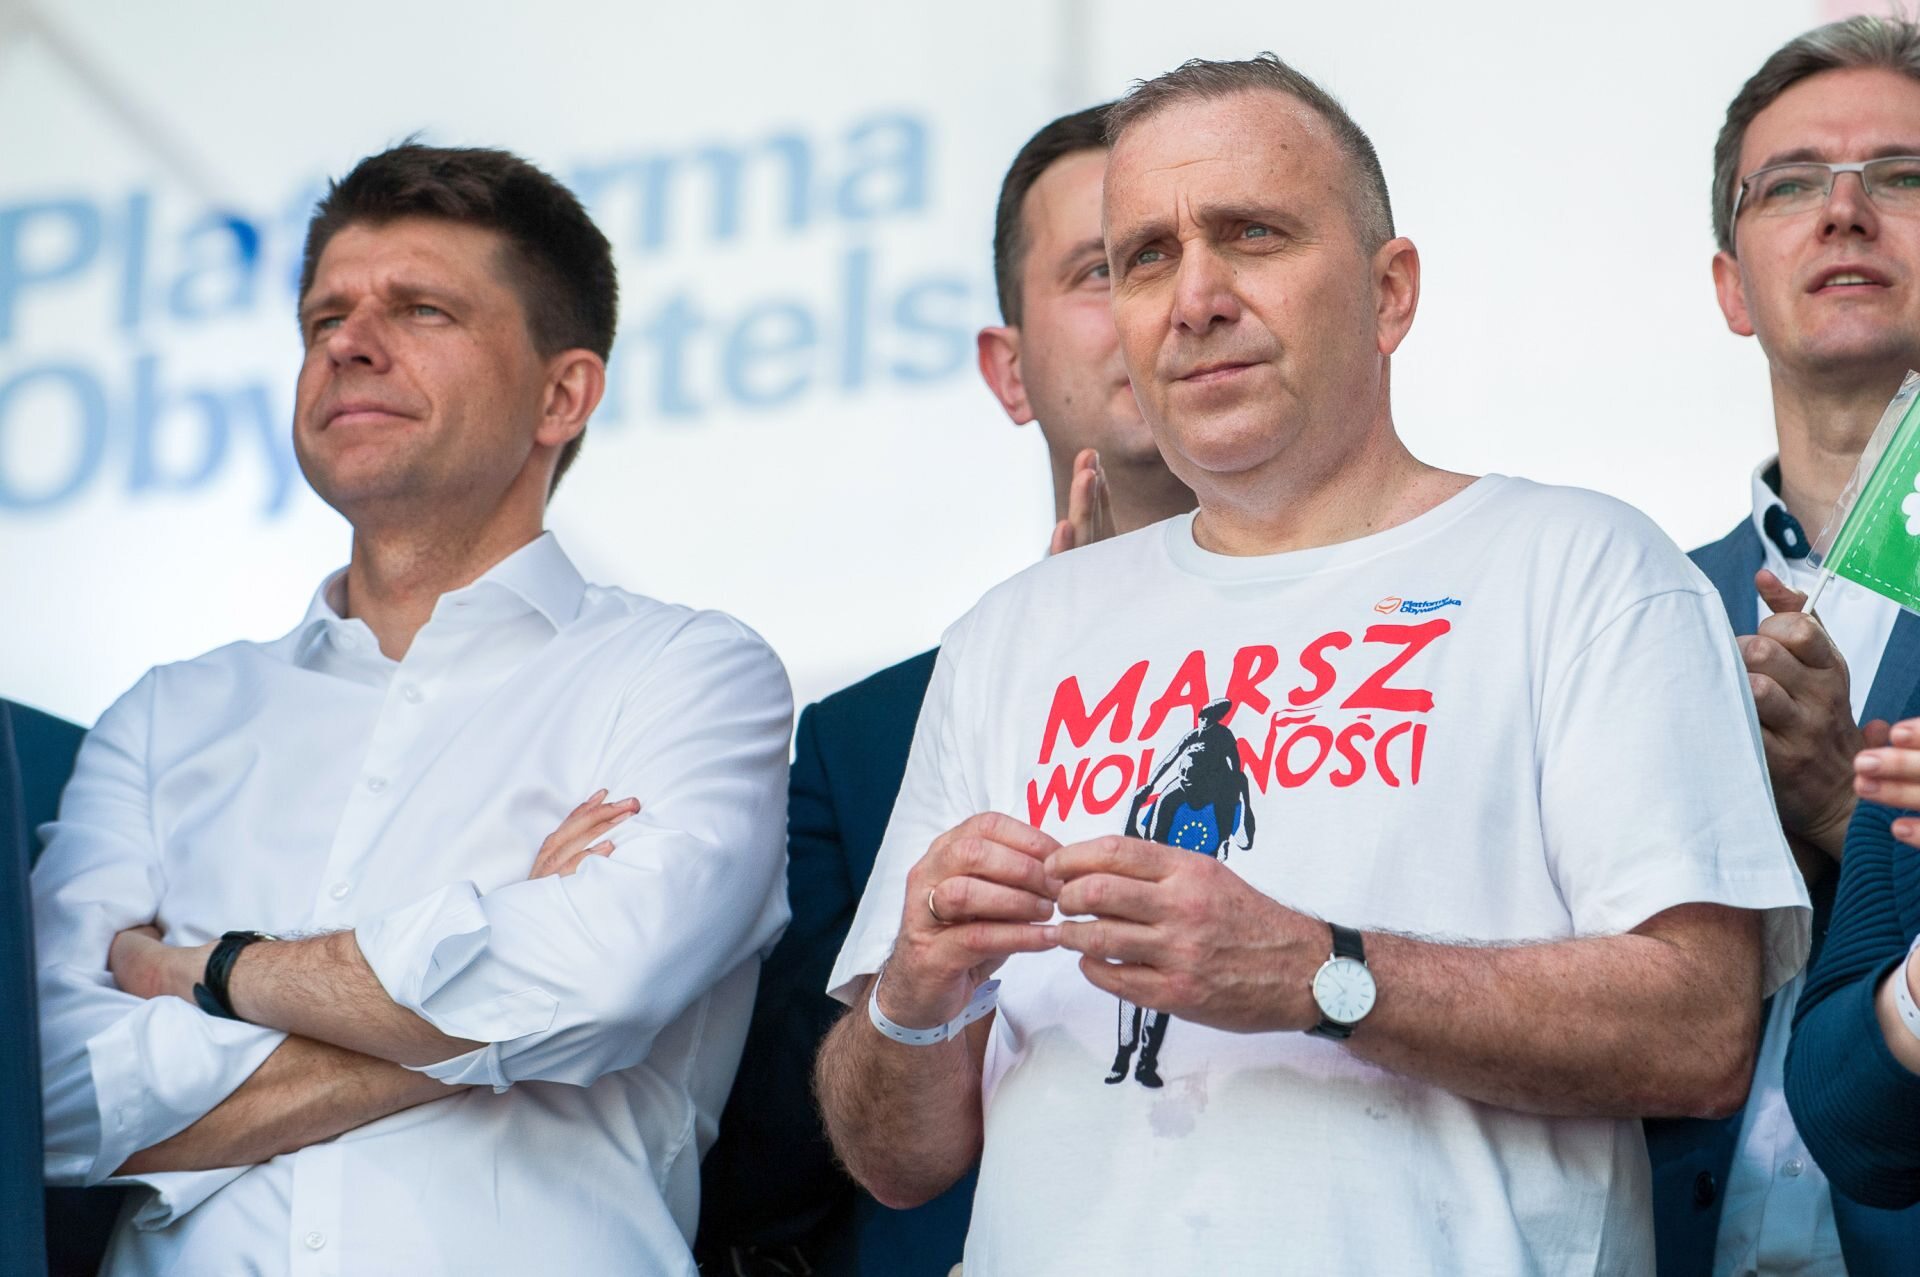 Liderzy partii opozycyjnych na Marszu Wolności, od lewej: Ryszard Petru, Grzegorz Schetyna (za nimi Władysław Kosiniak-Kamysz)